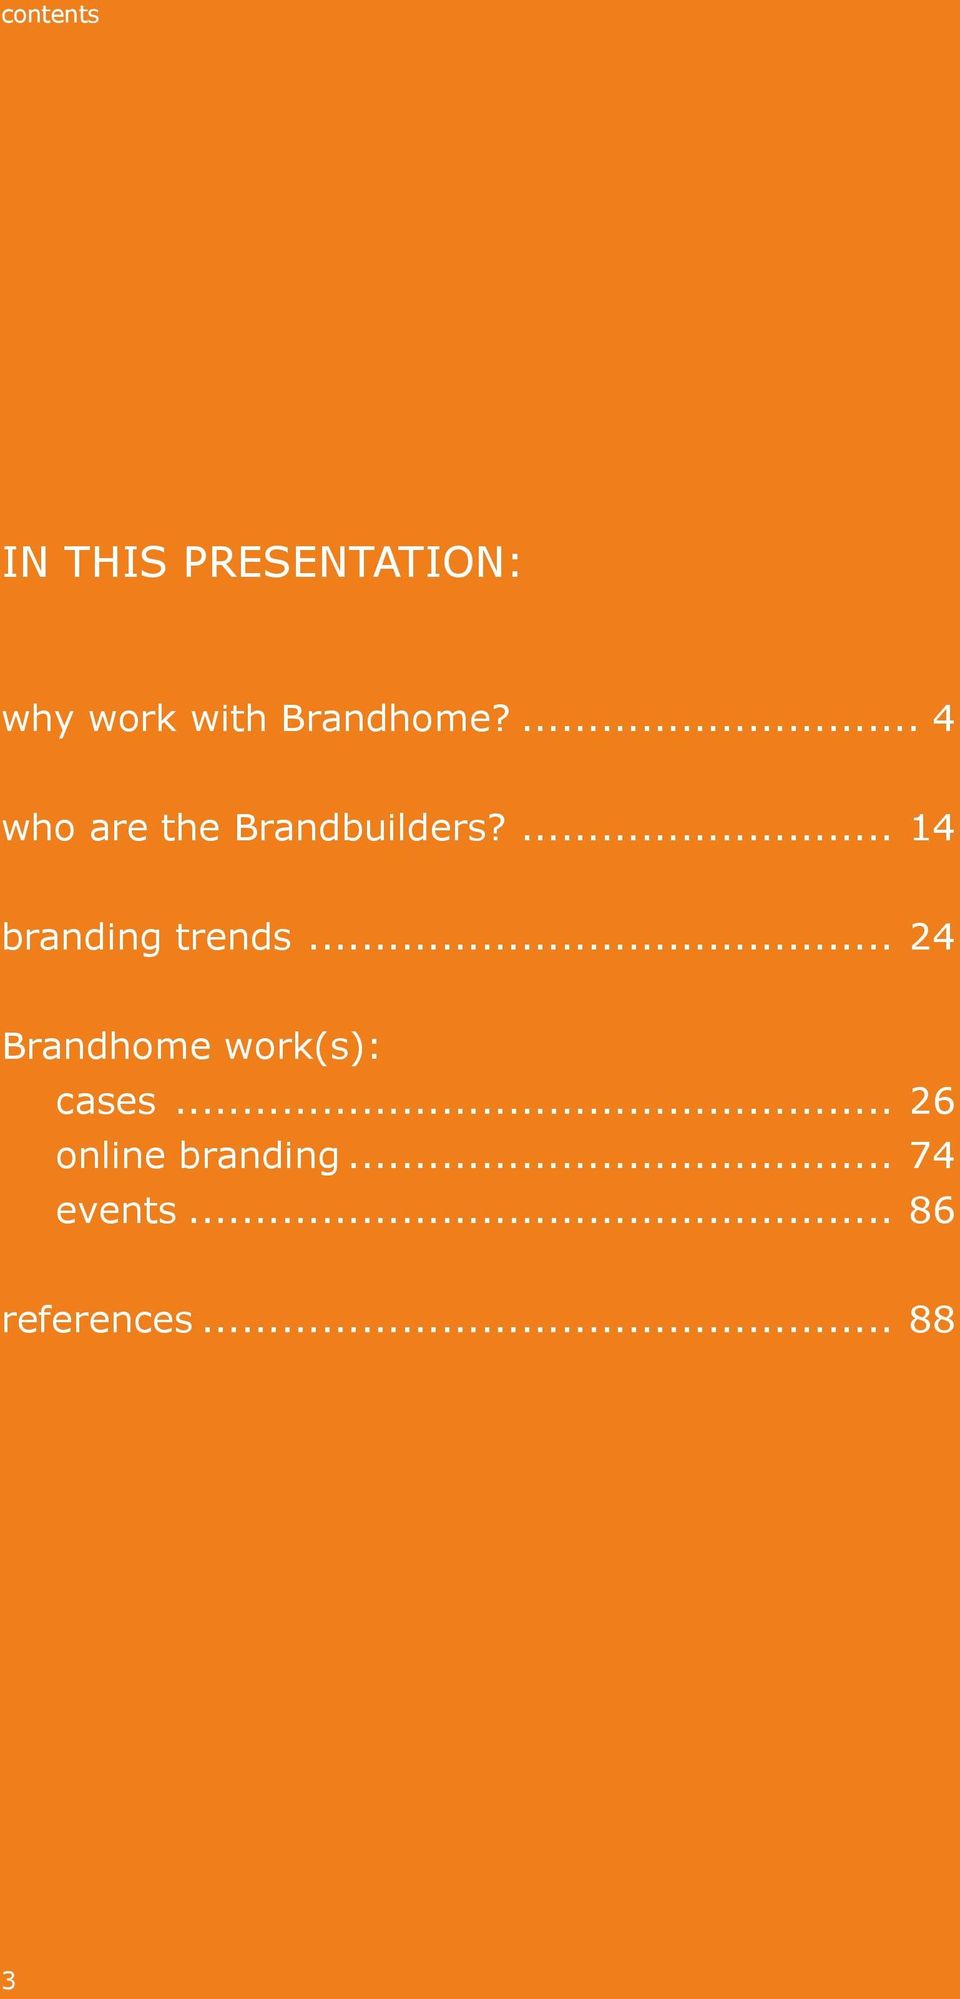 ... 14 branding trends... 24 Brandhome work(s): cases.